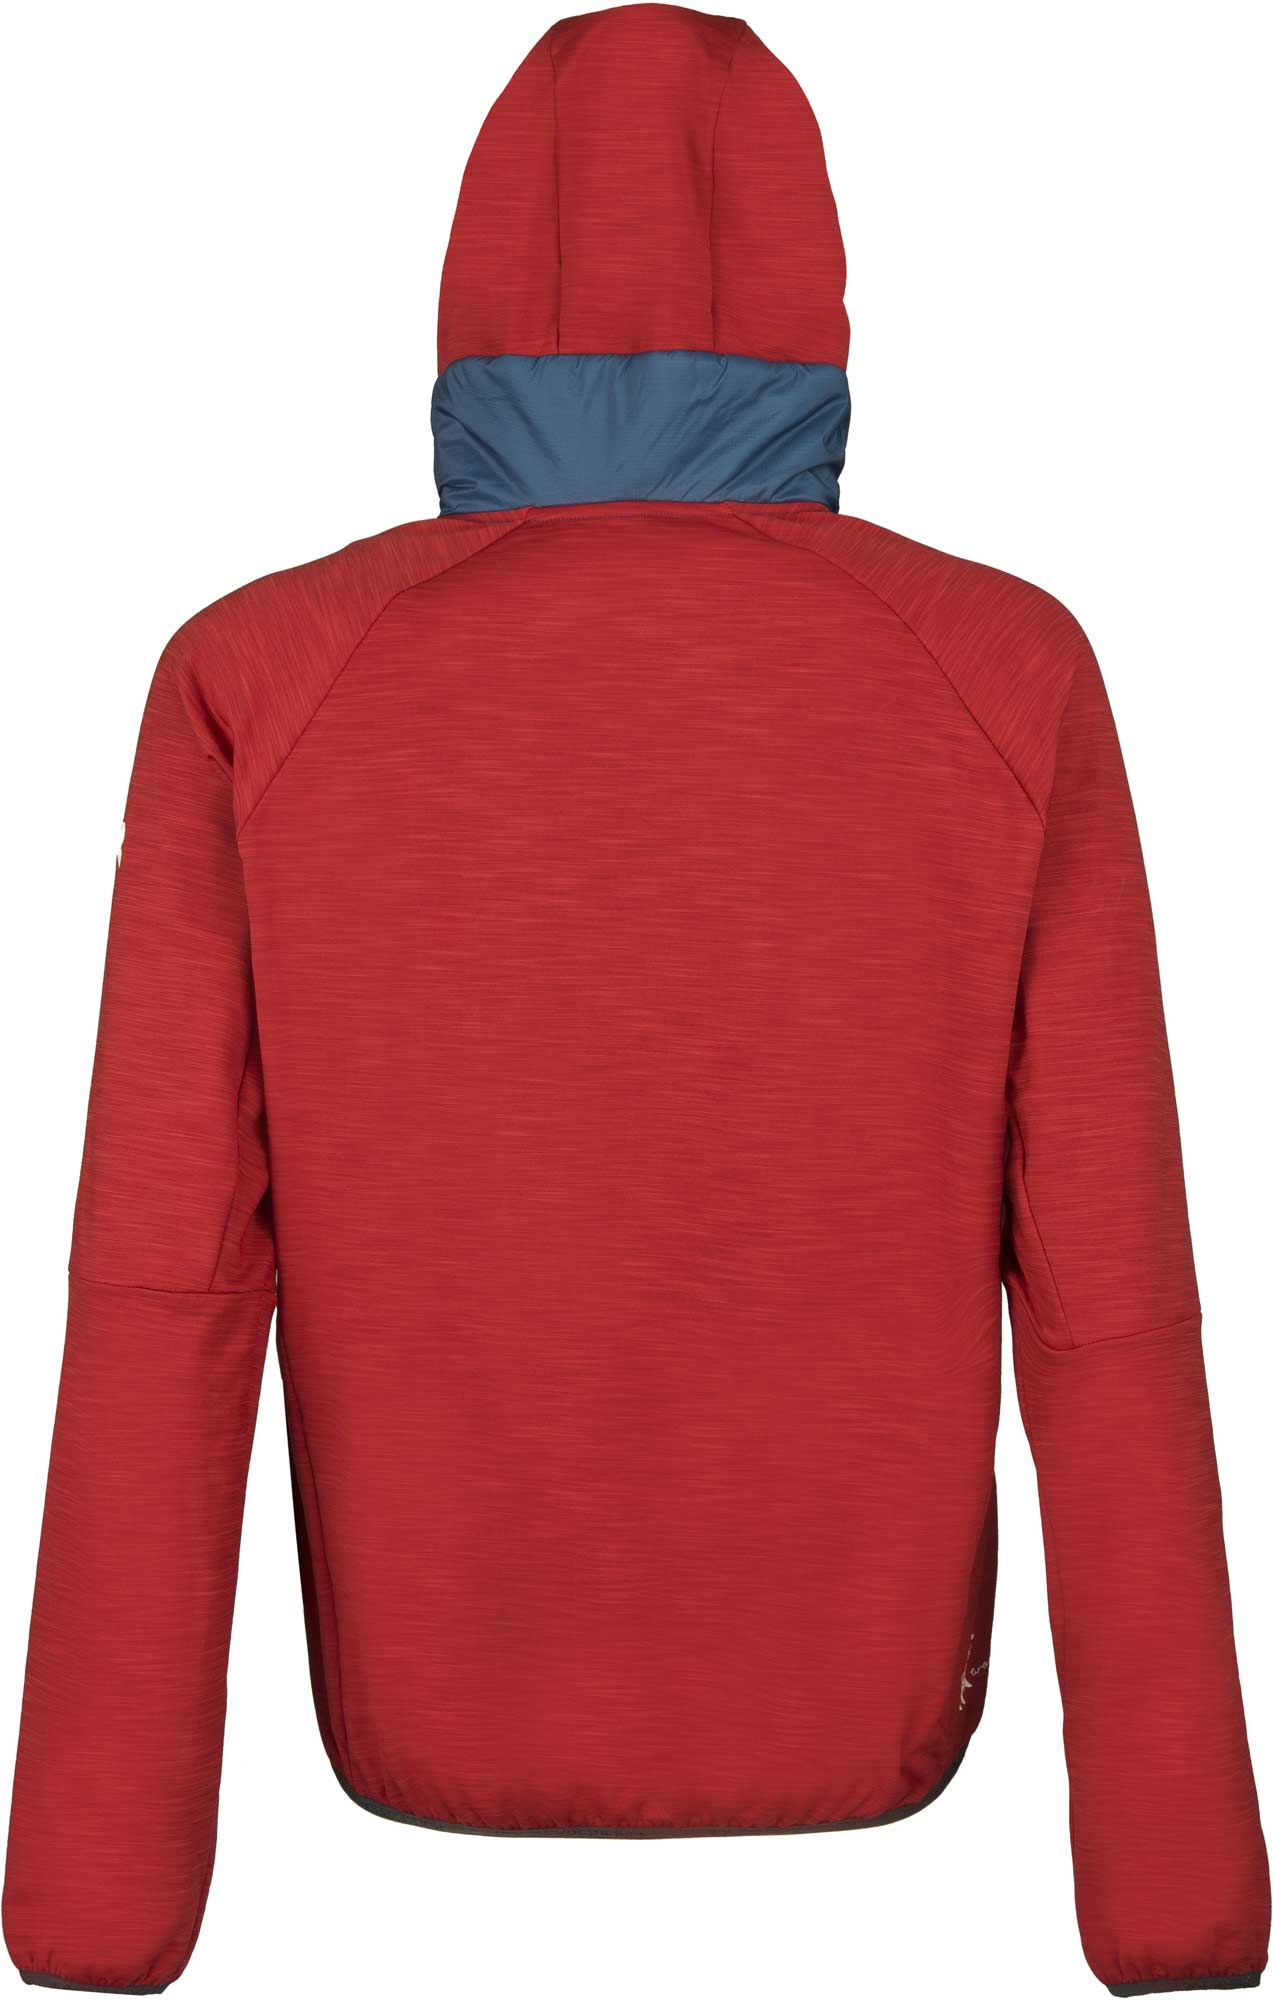 Men’s hooded outdoor jacket